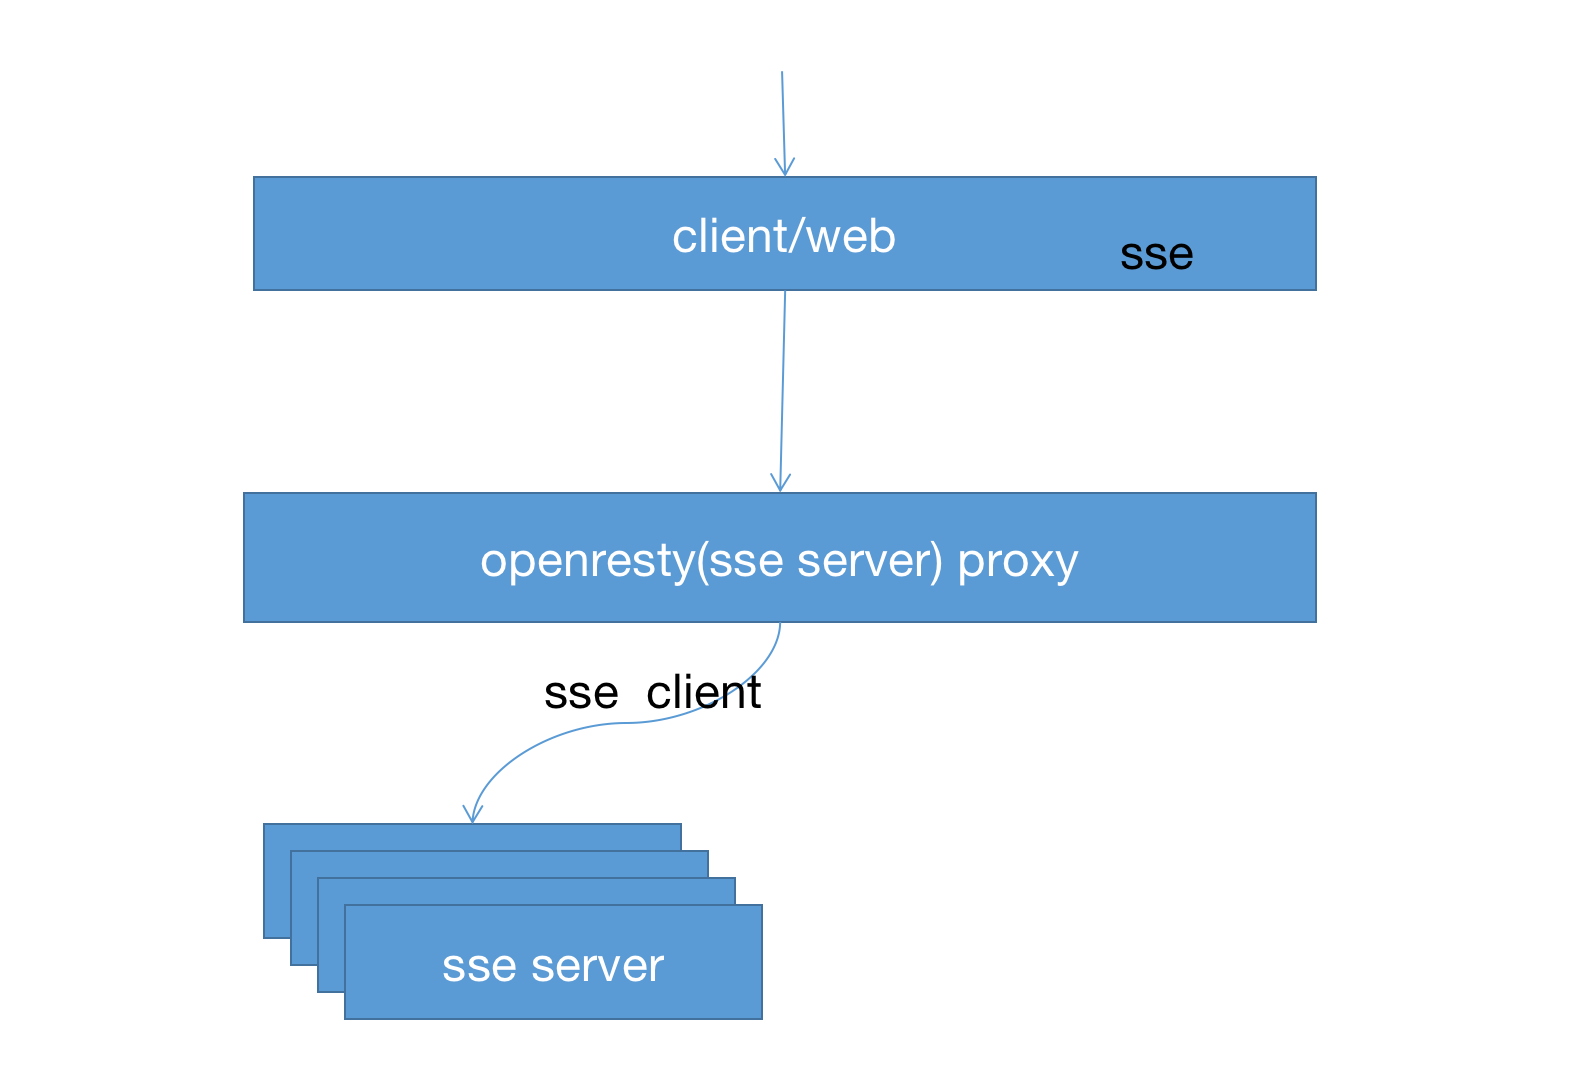 openresty proxy sse 服务_docker